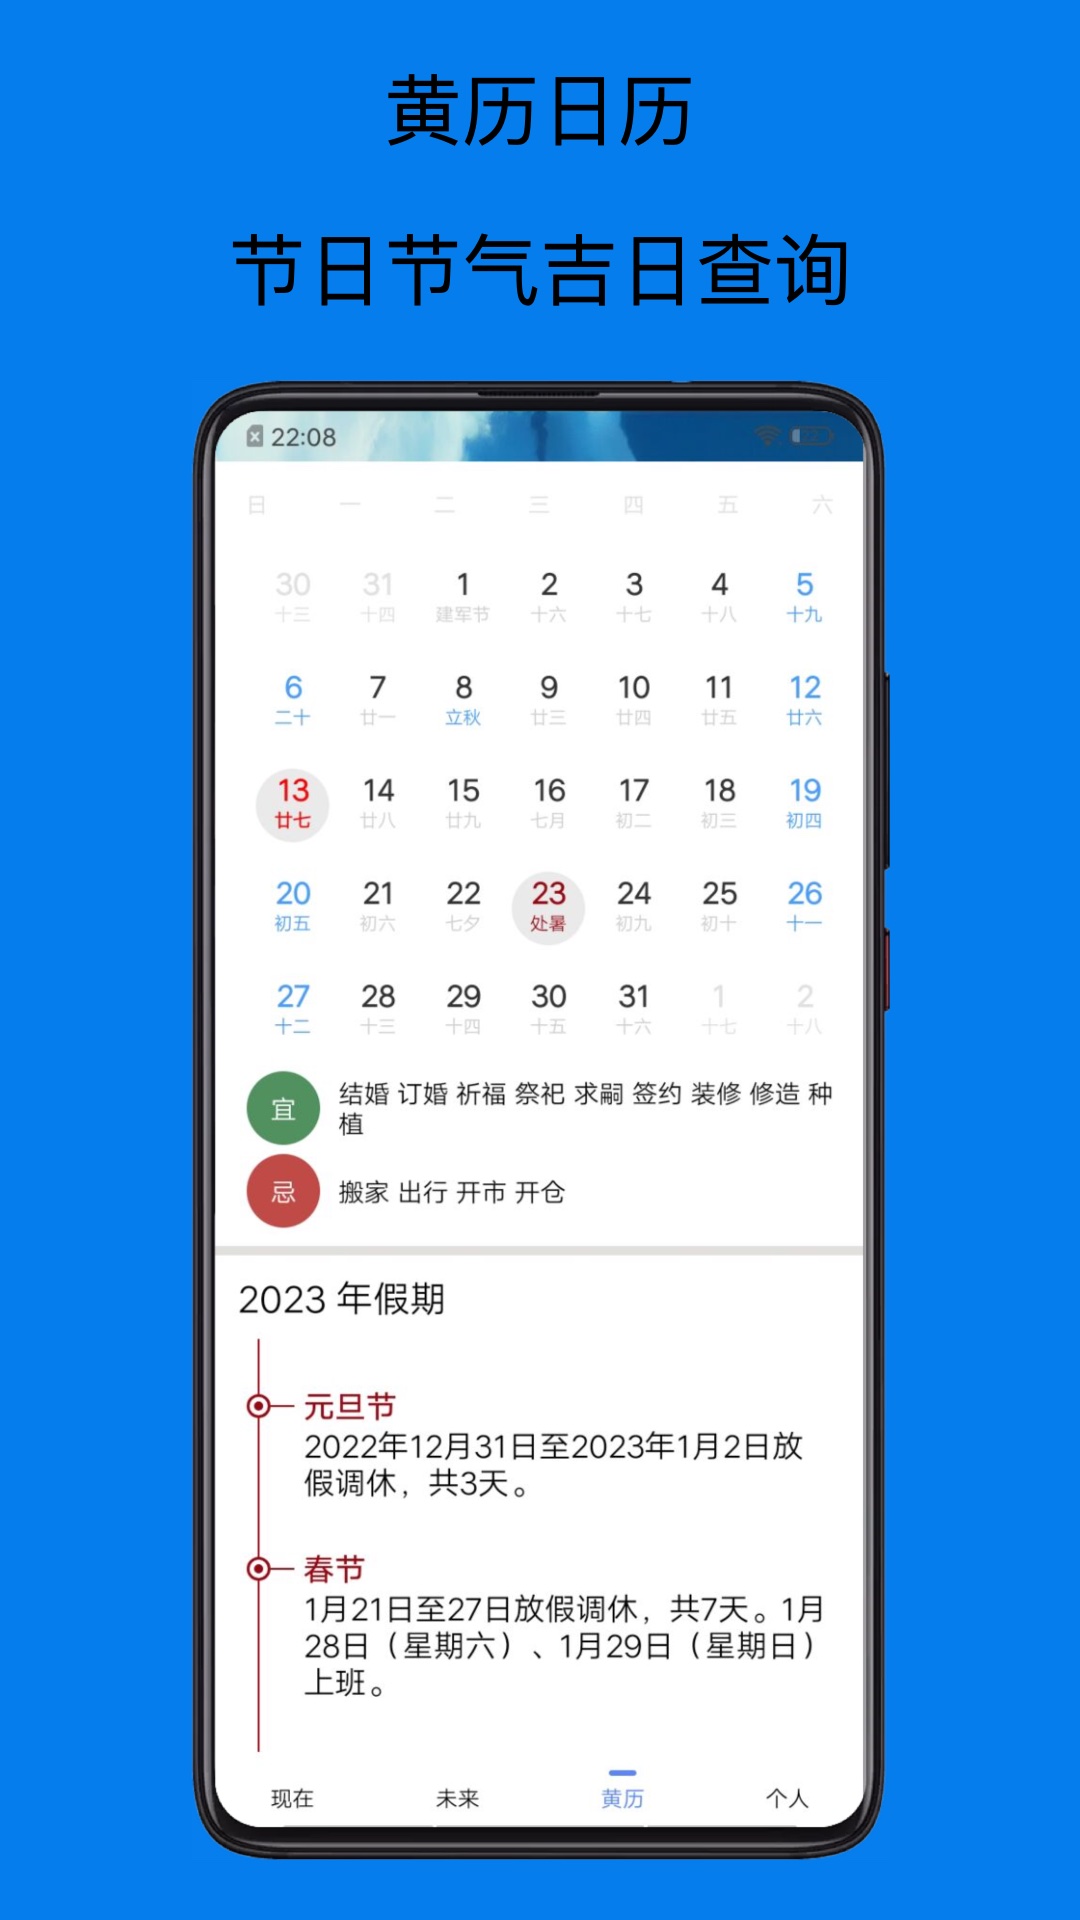 祺盛天气预报15天app官方版截图4: